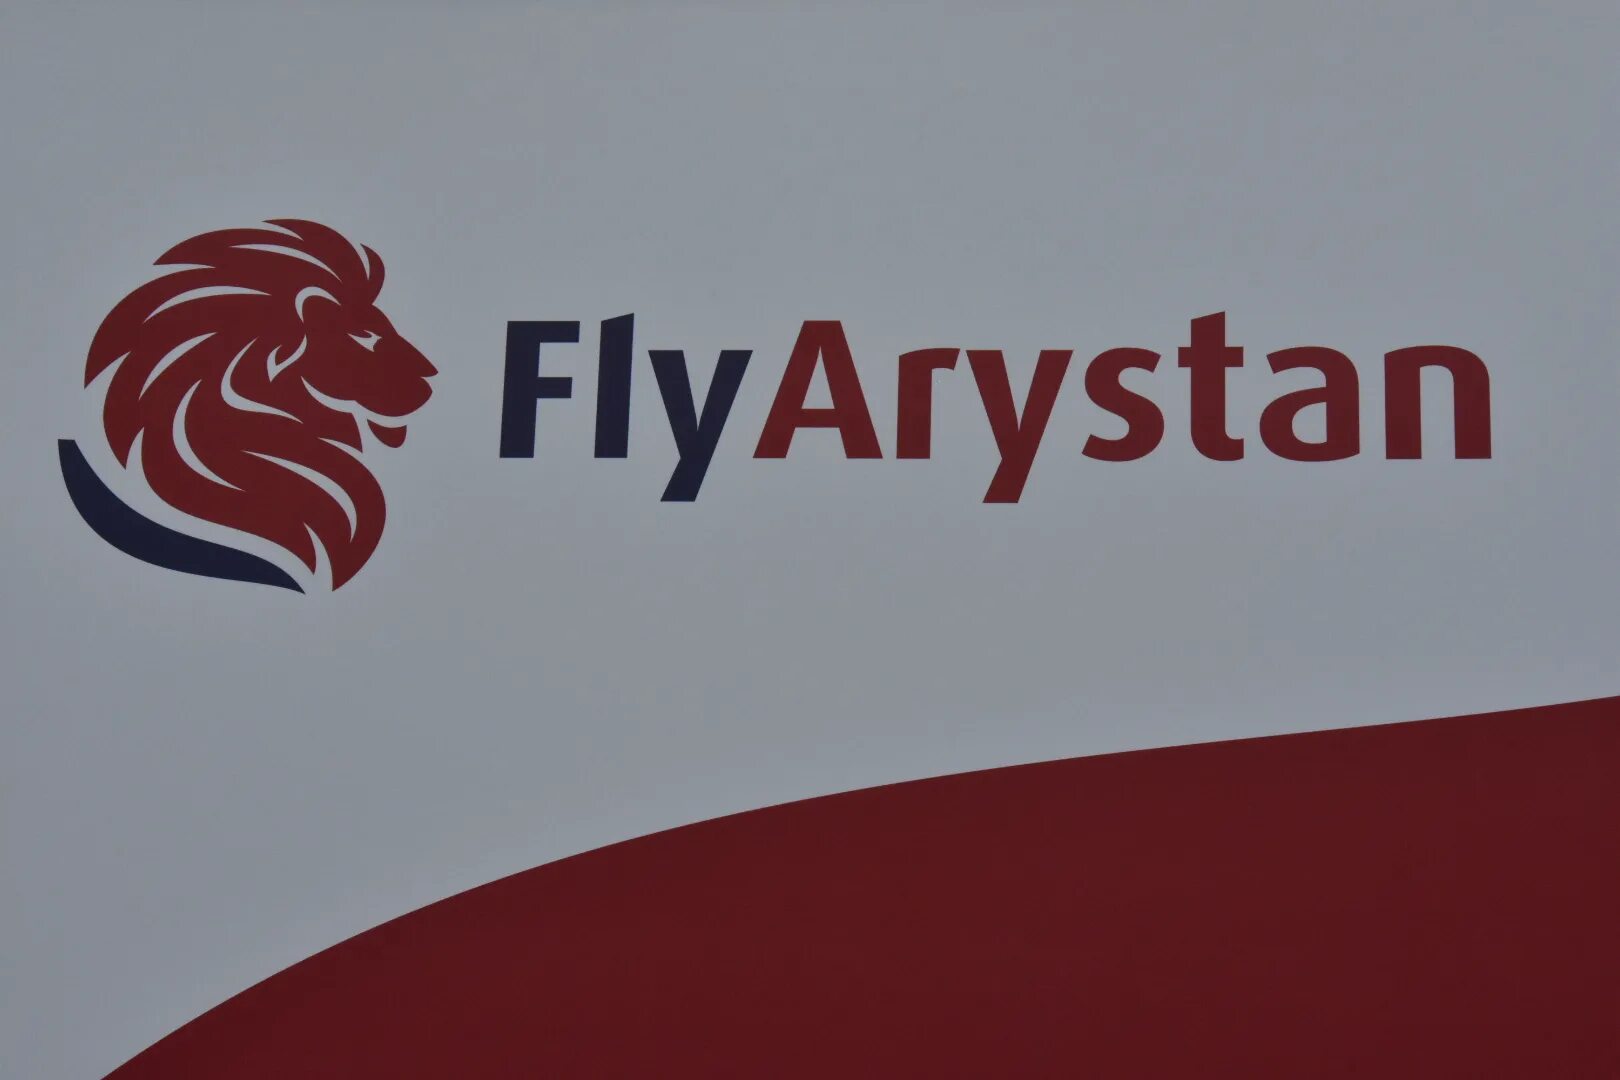 Авиабилеты арыстан купить. Fly Arystan. Flyarystan лого. Fly Arystan логотип. Авиакомпания flyarystan логотип.